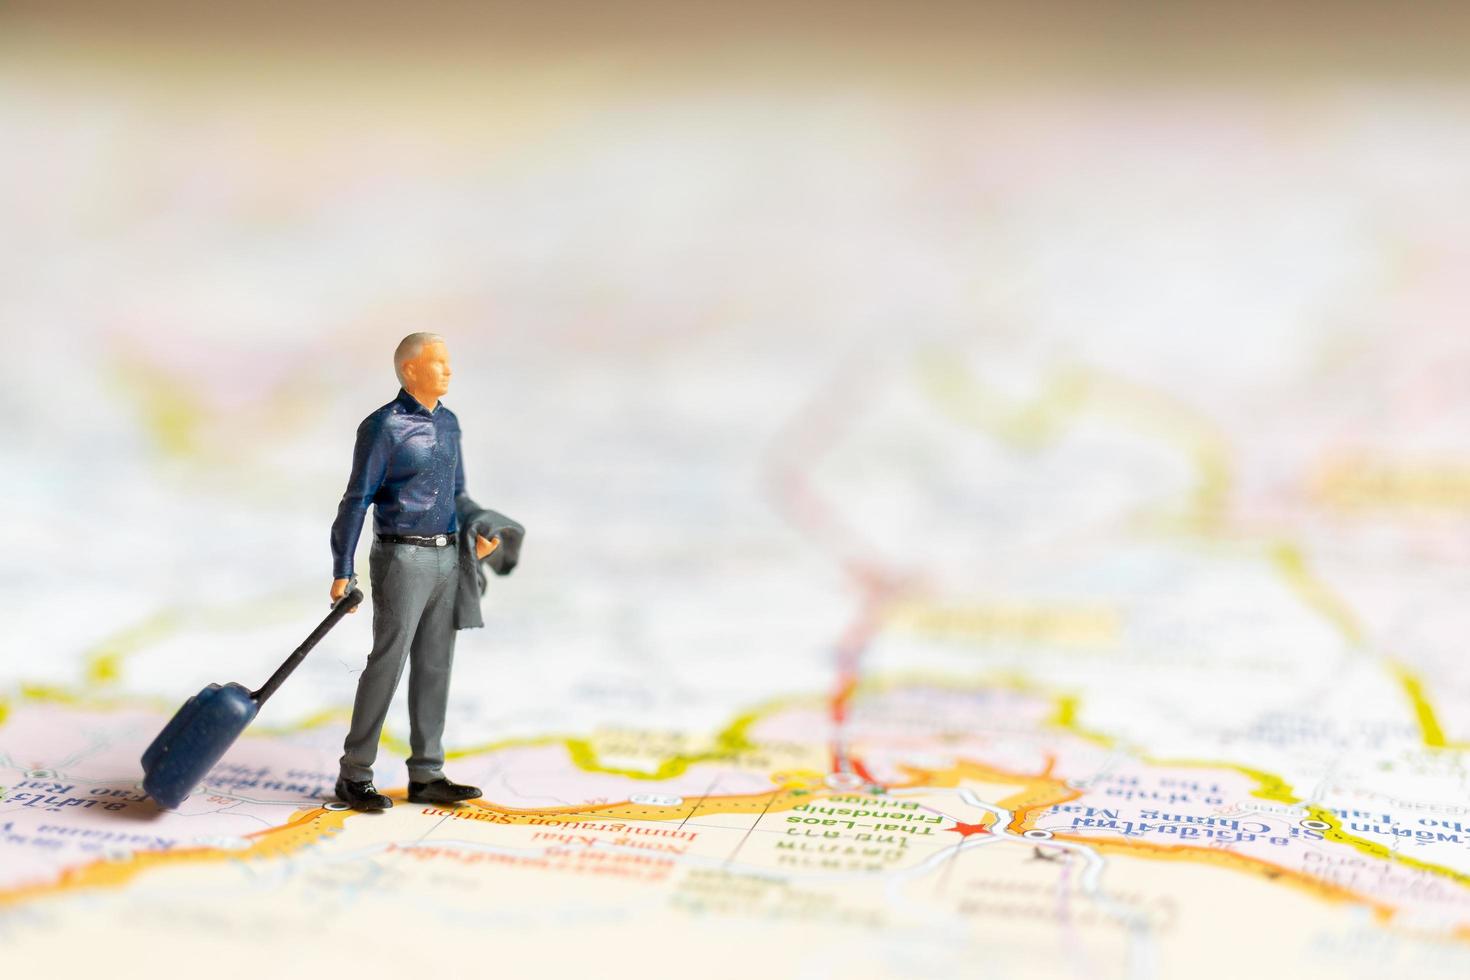 miniatuurzakenman die zich op kaart, reisconcept bevindt foto